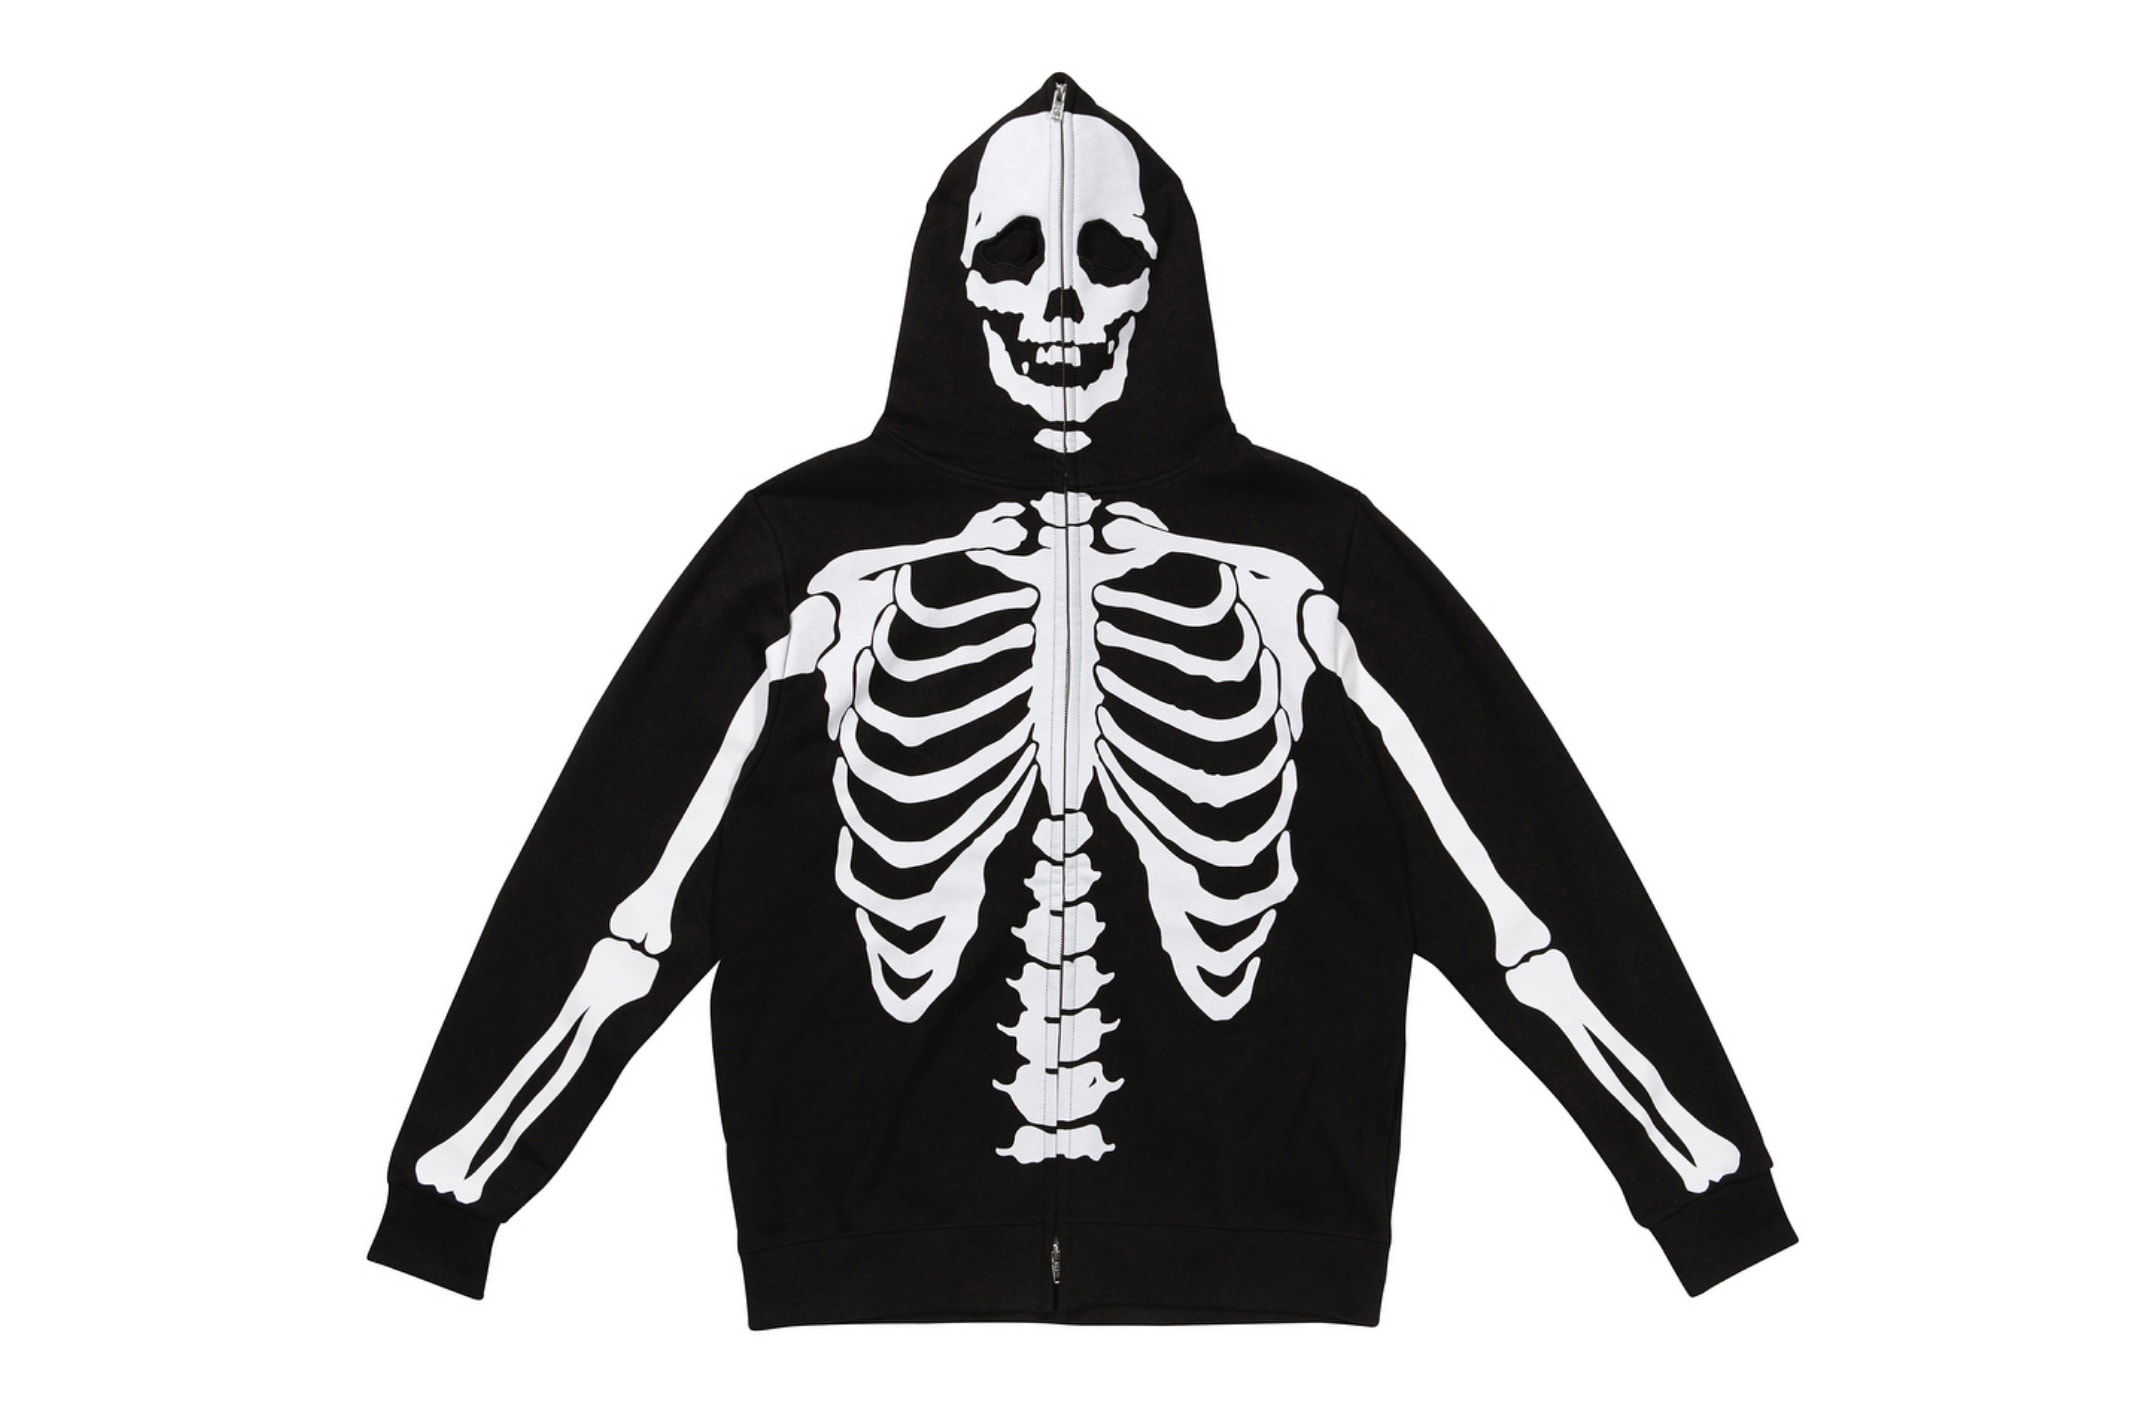 99%IS Dancing Skeleton Hoodies Like LRG Dead Serious